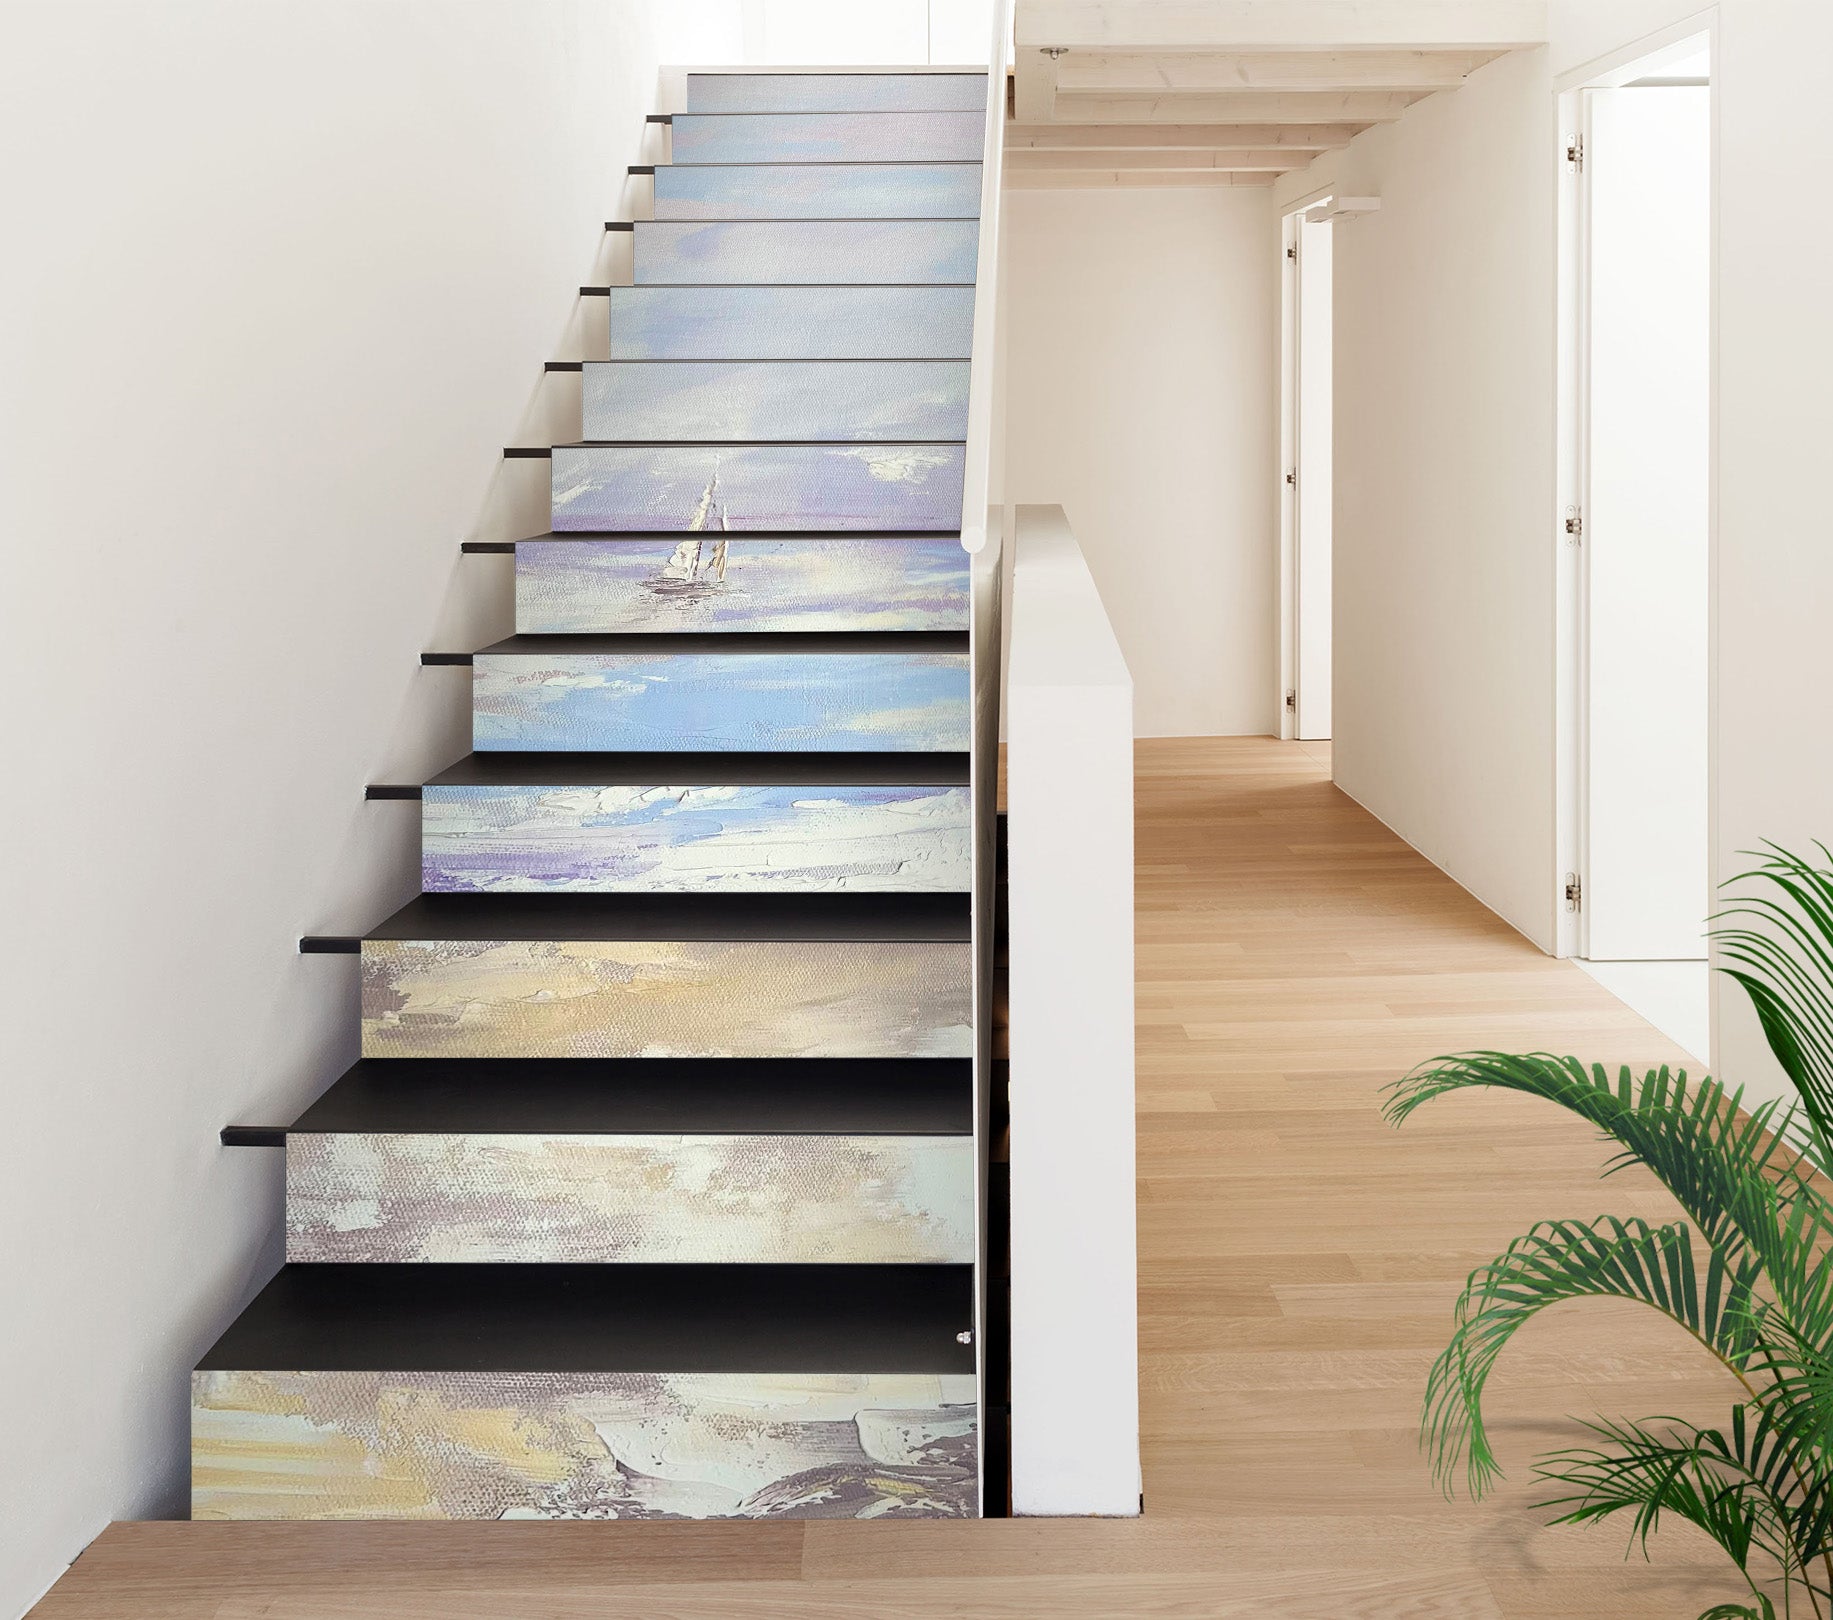 3D Ocean Painting 3918 Skromova Marina Stair Risers